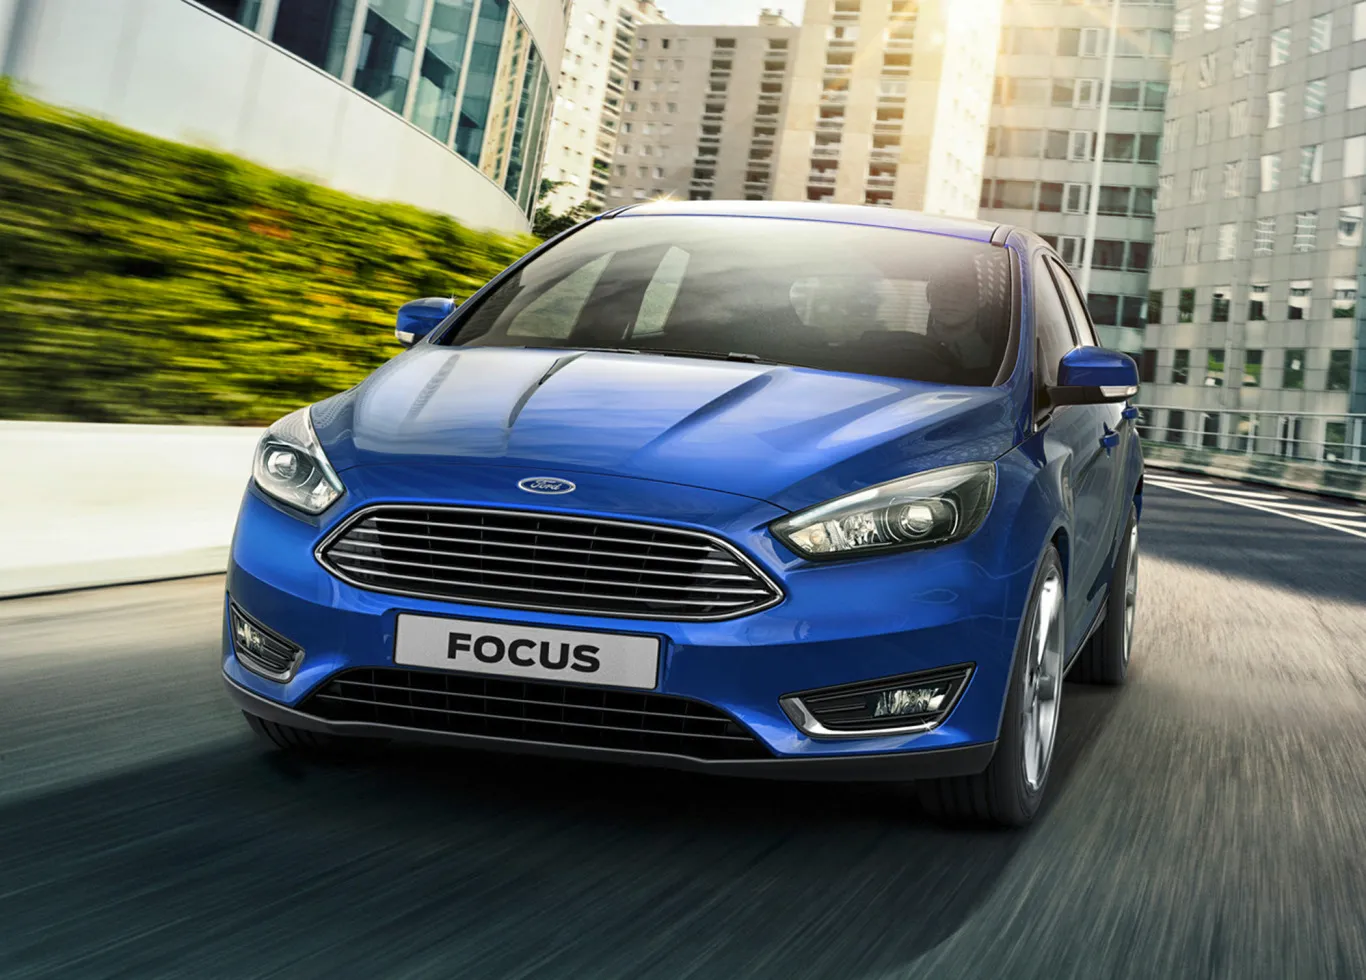 Khám phá Ford Focus – một trong những mẫu hatchback bán chạy tại châu Âu